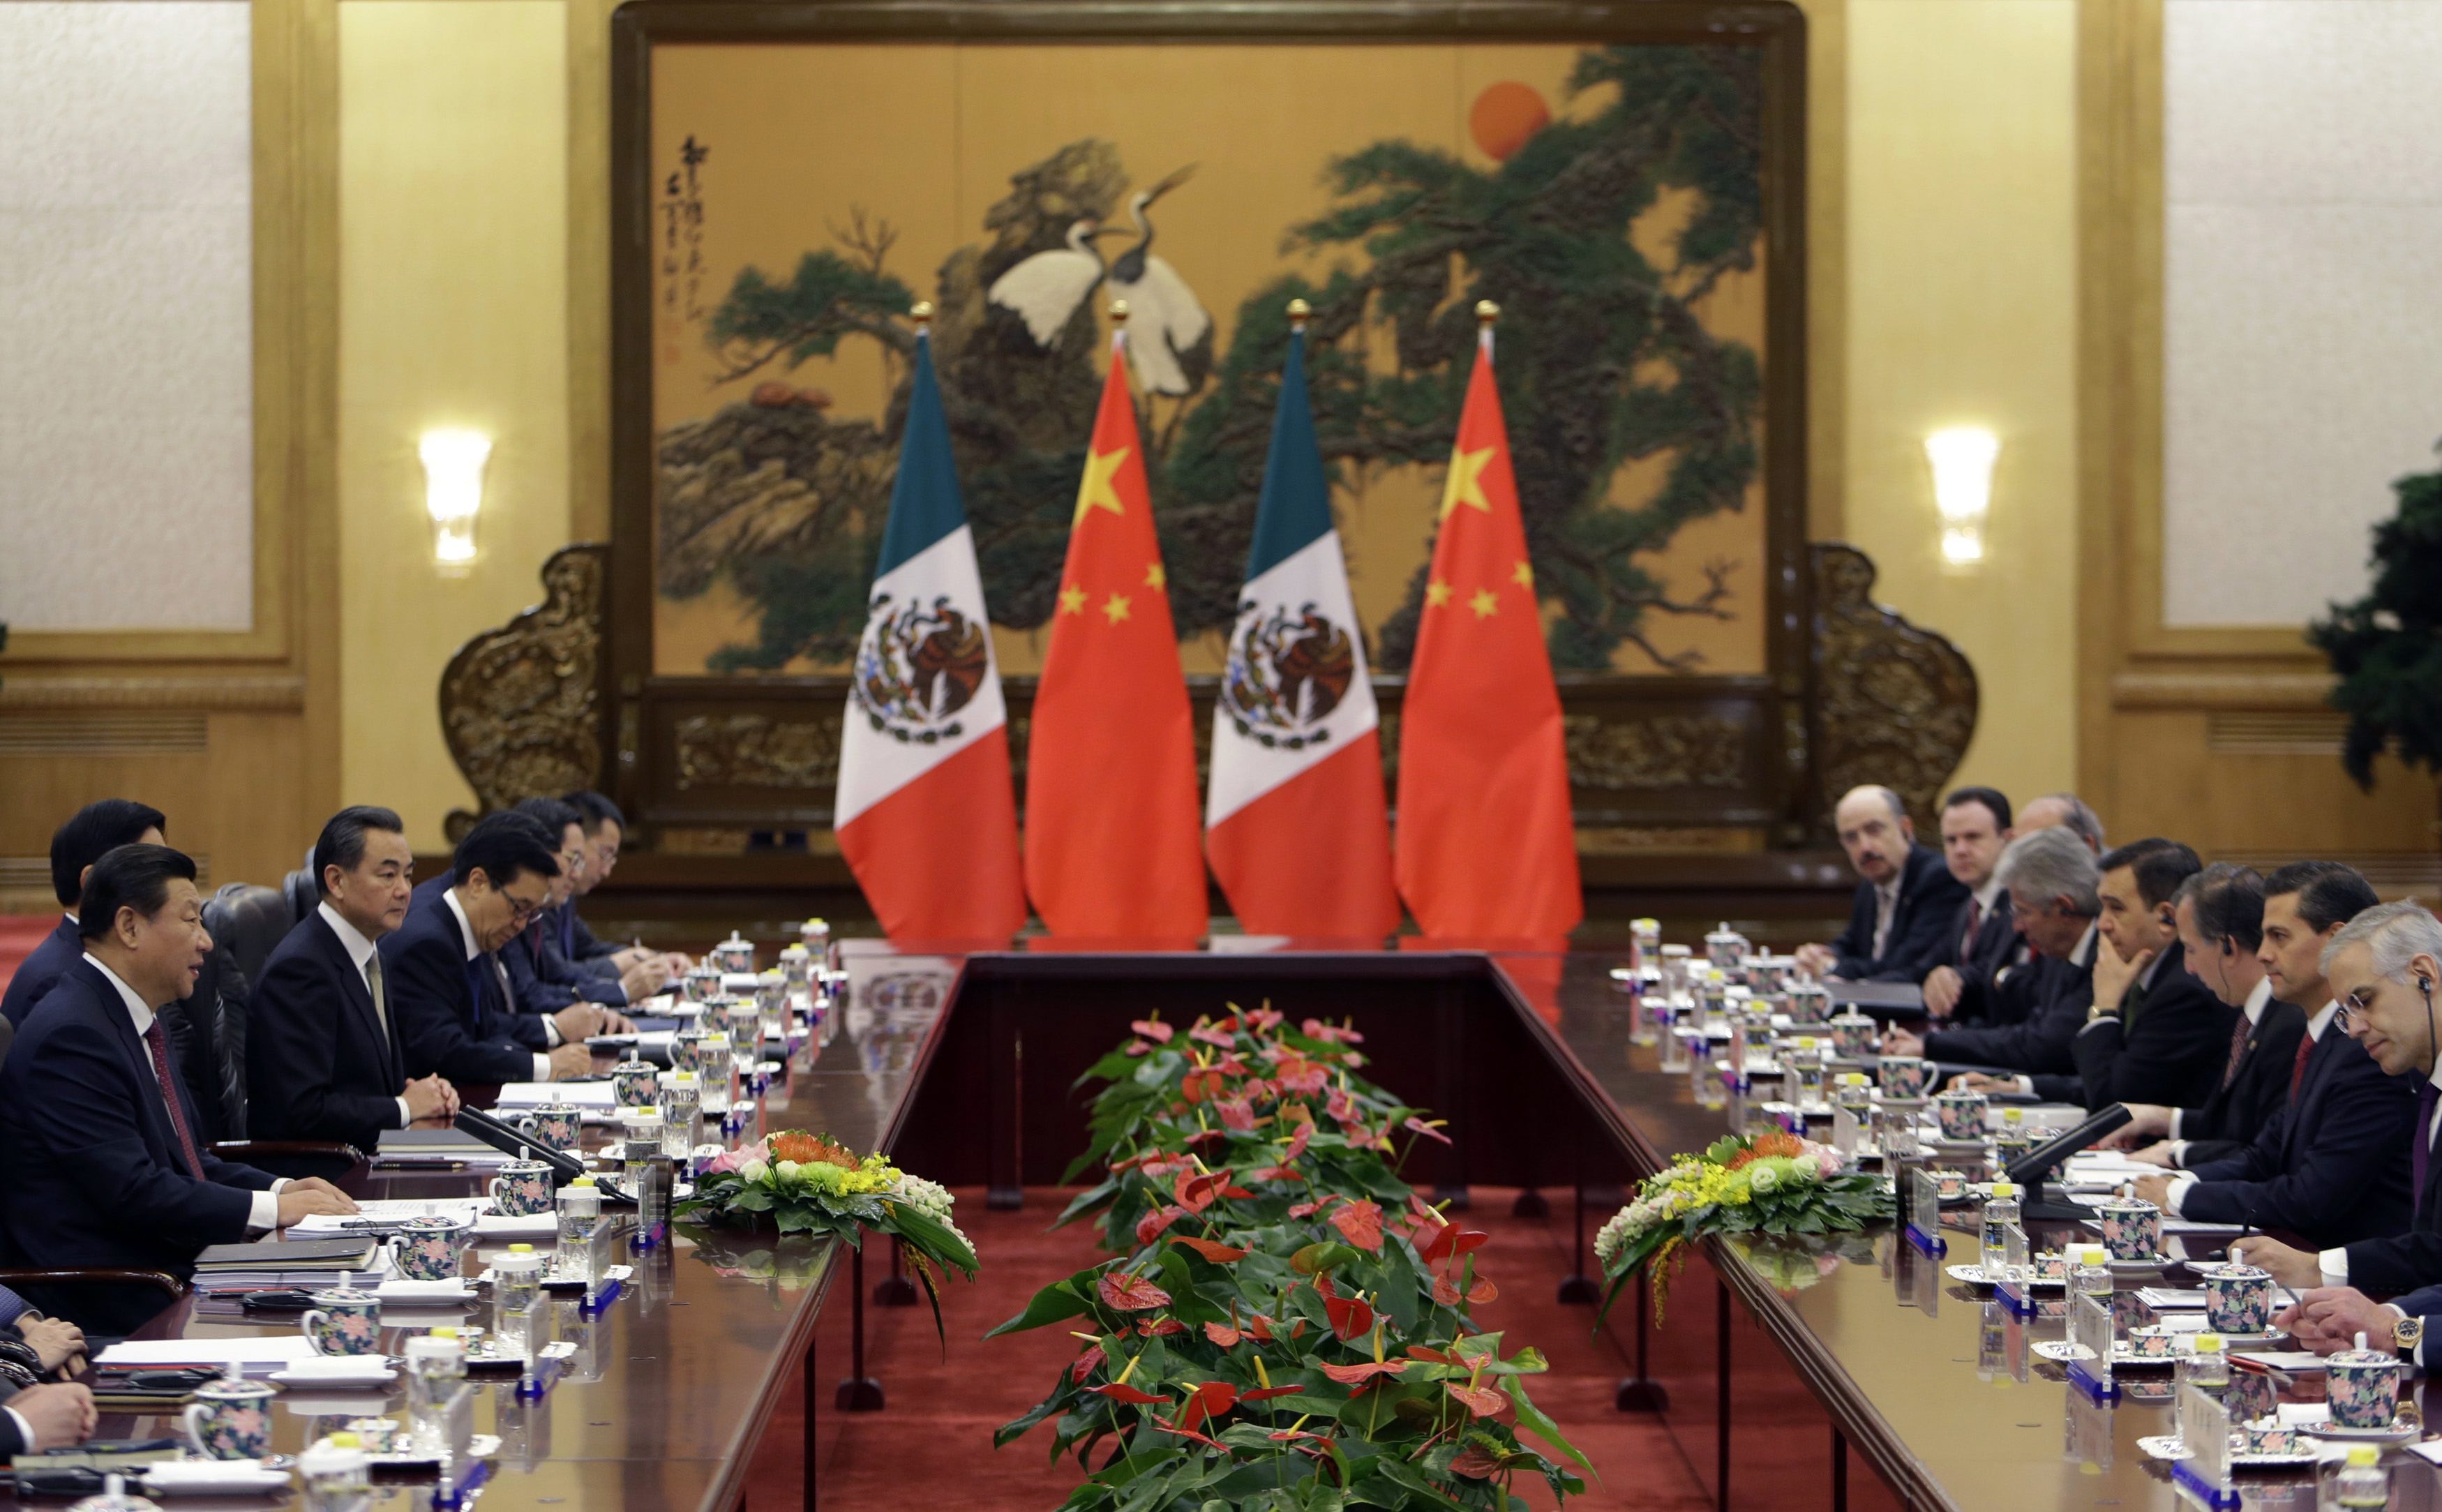 China Mexico